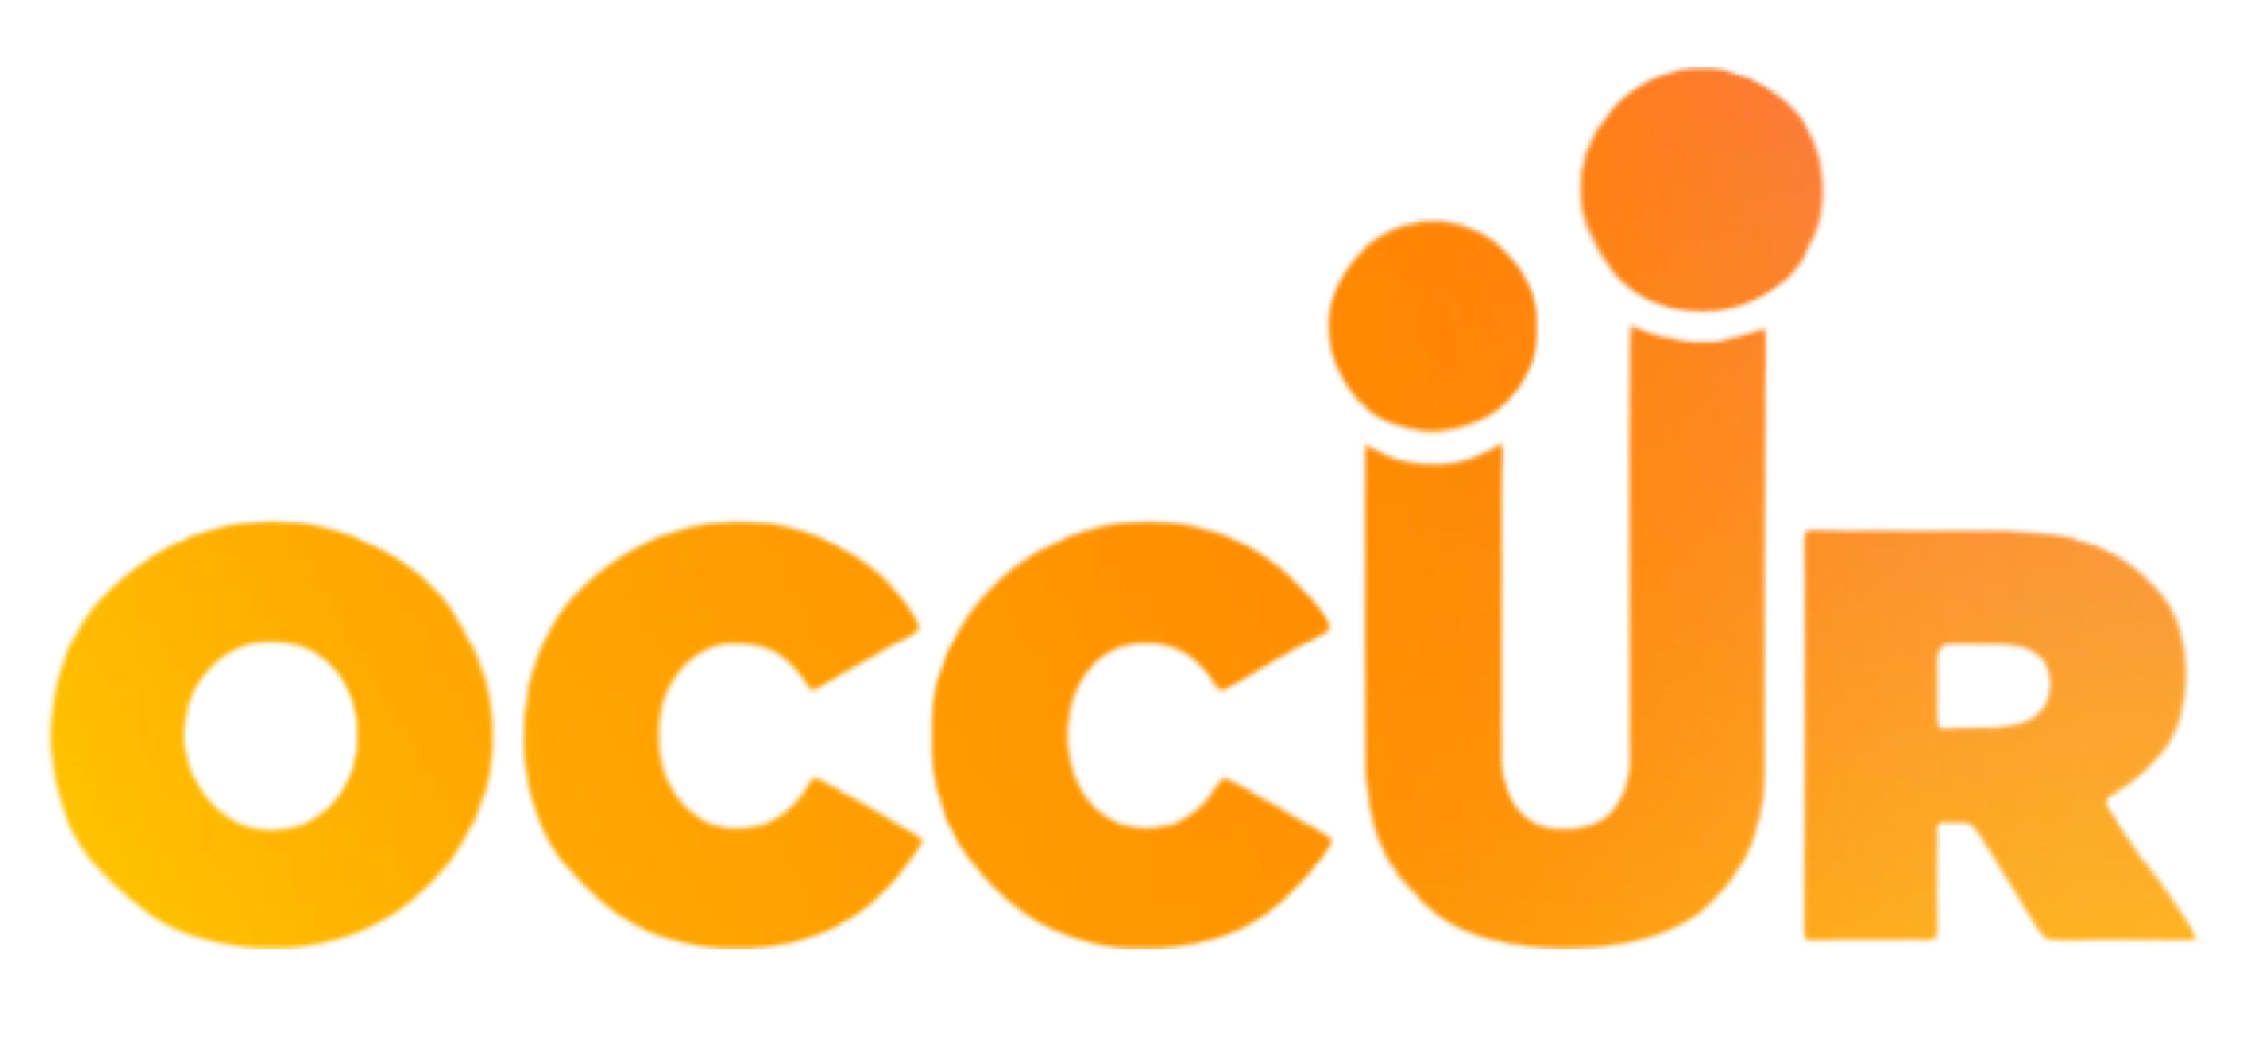 OCCUR logo